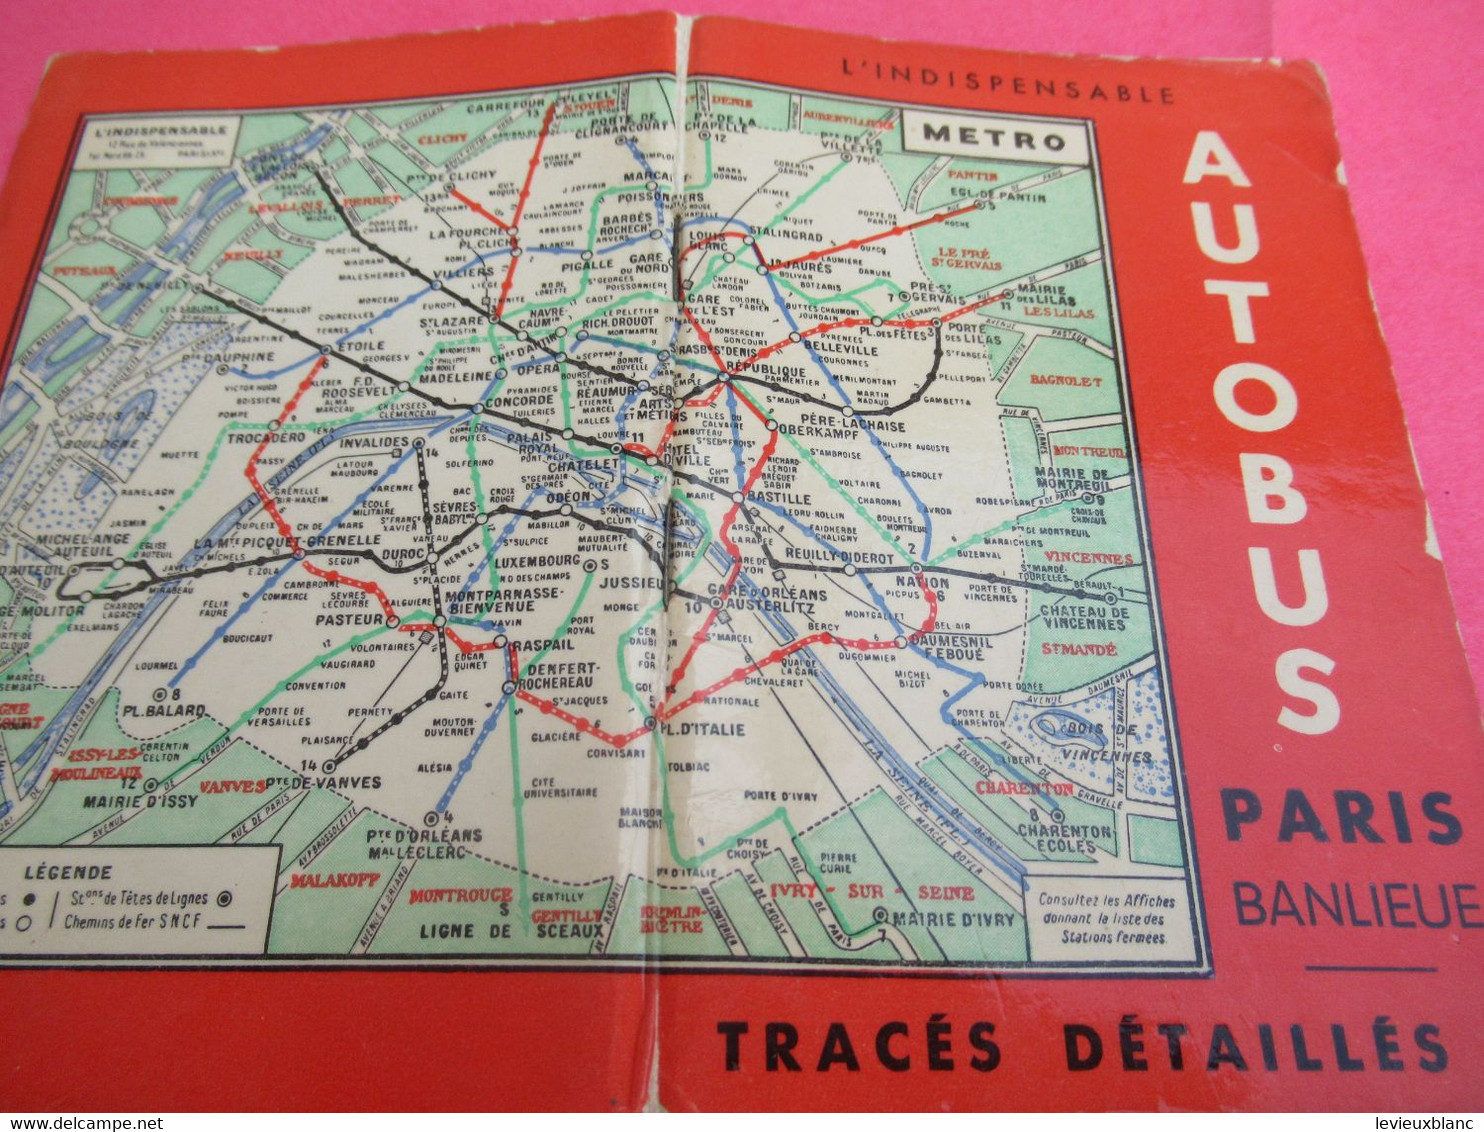 Petit Guide de poche/ L'INDISPENSABLE/ Autobus Paris Banlieue/ Tracés détaillés/ Vers 1945-1950   TRA63